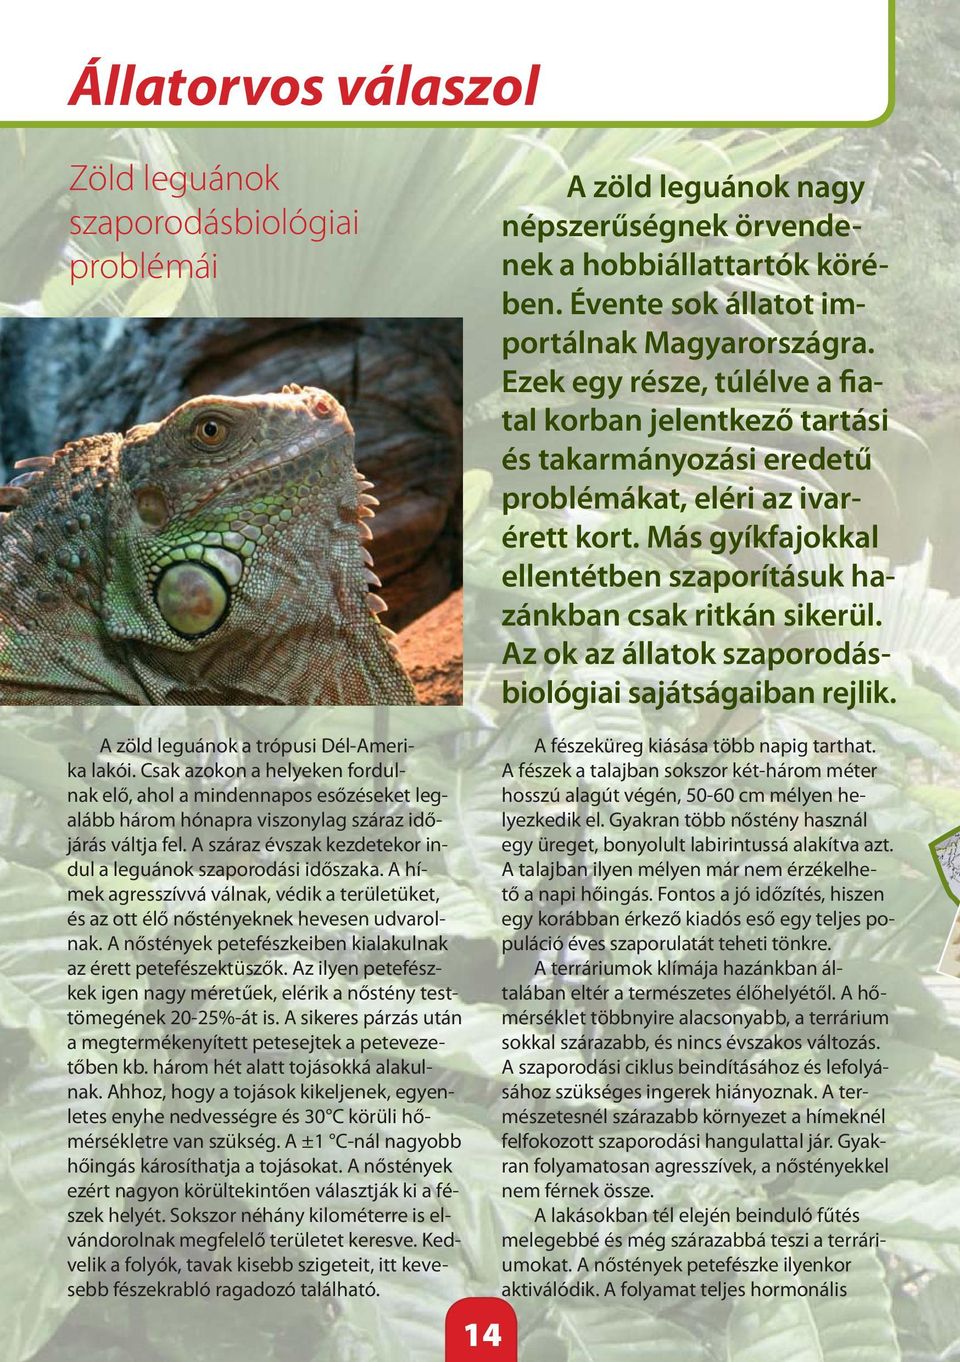 Az ok az állatok szaporodásbiológiai sajátságaiban rejlik. A zöld leguánok a trópusi Dél-Amerika lakói.